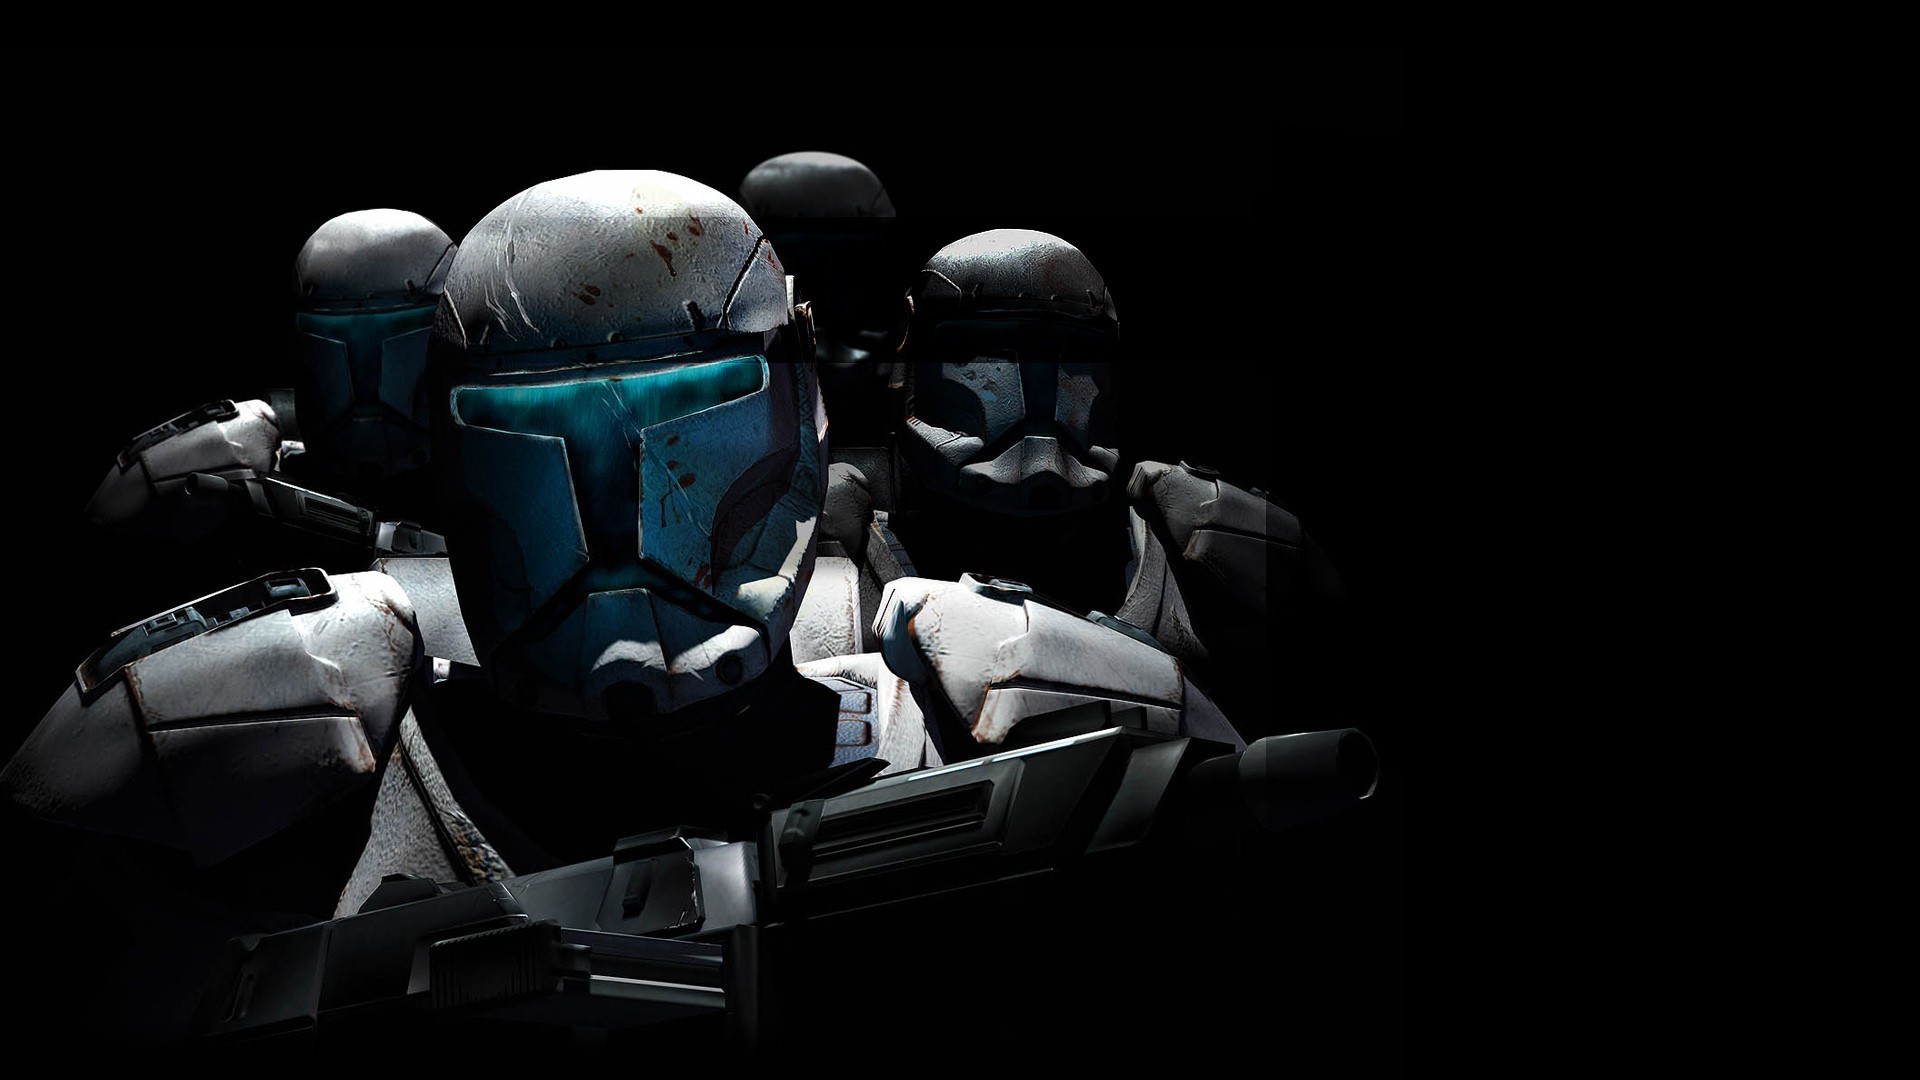 1920x1080 star wars star wars republic commando video games clone trooper wallpaper JPG 190 kB